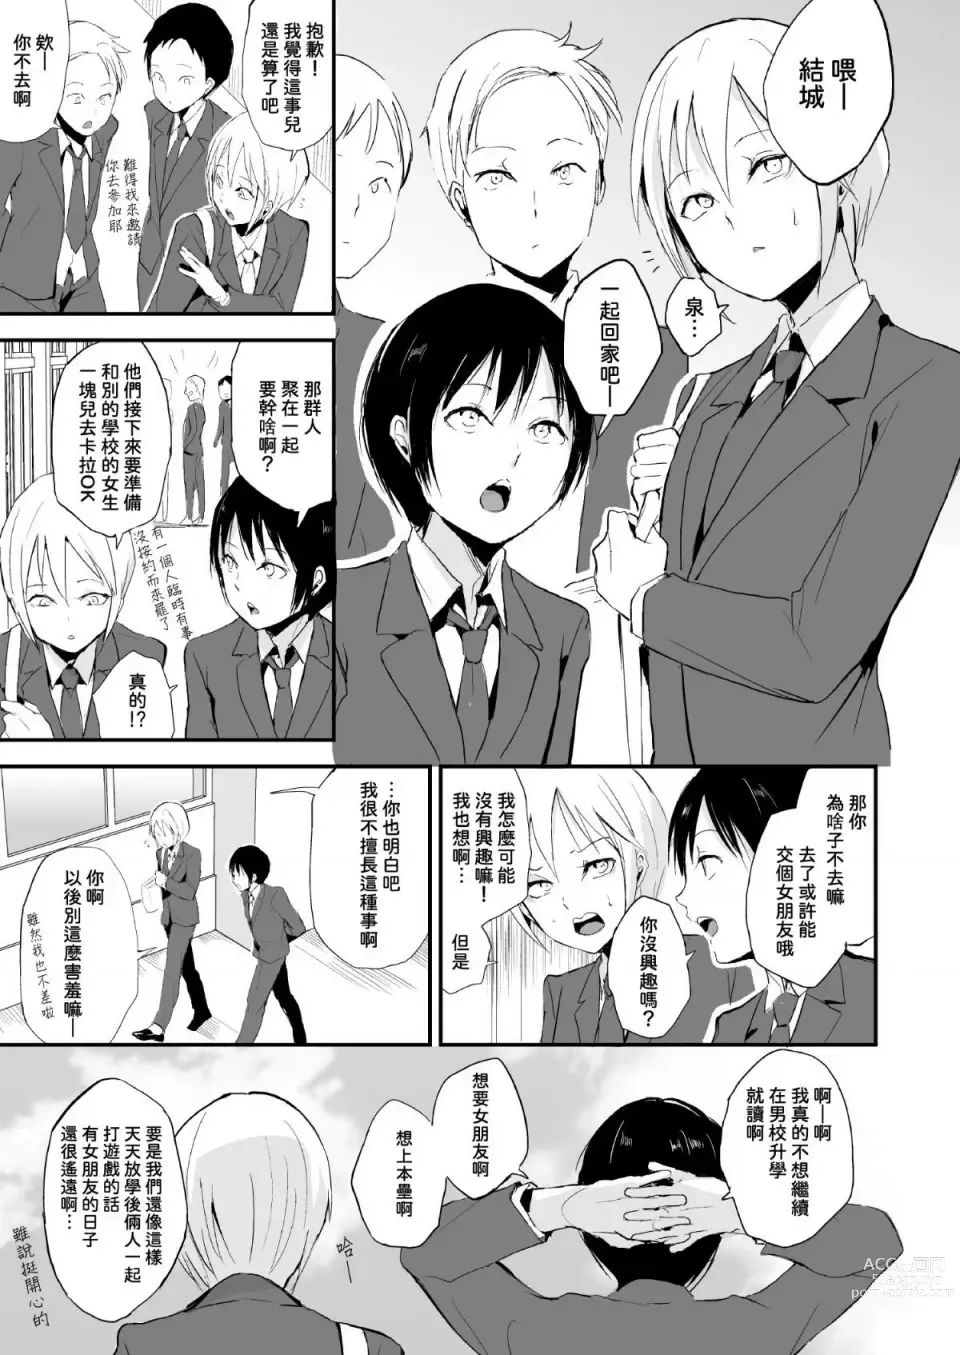 Page 2 of doujinshi Izumi-kun to Yuuki-kun 1+2